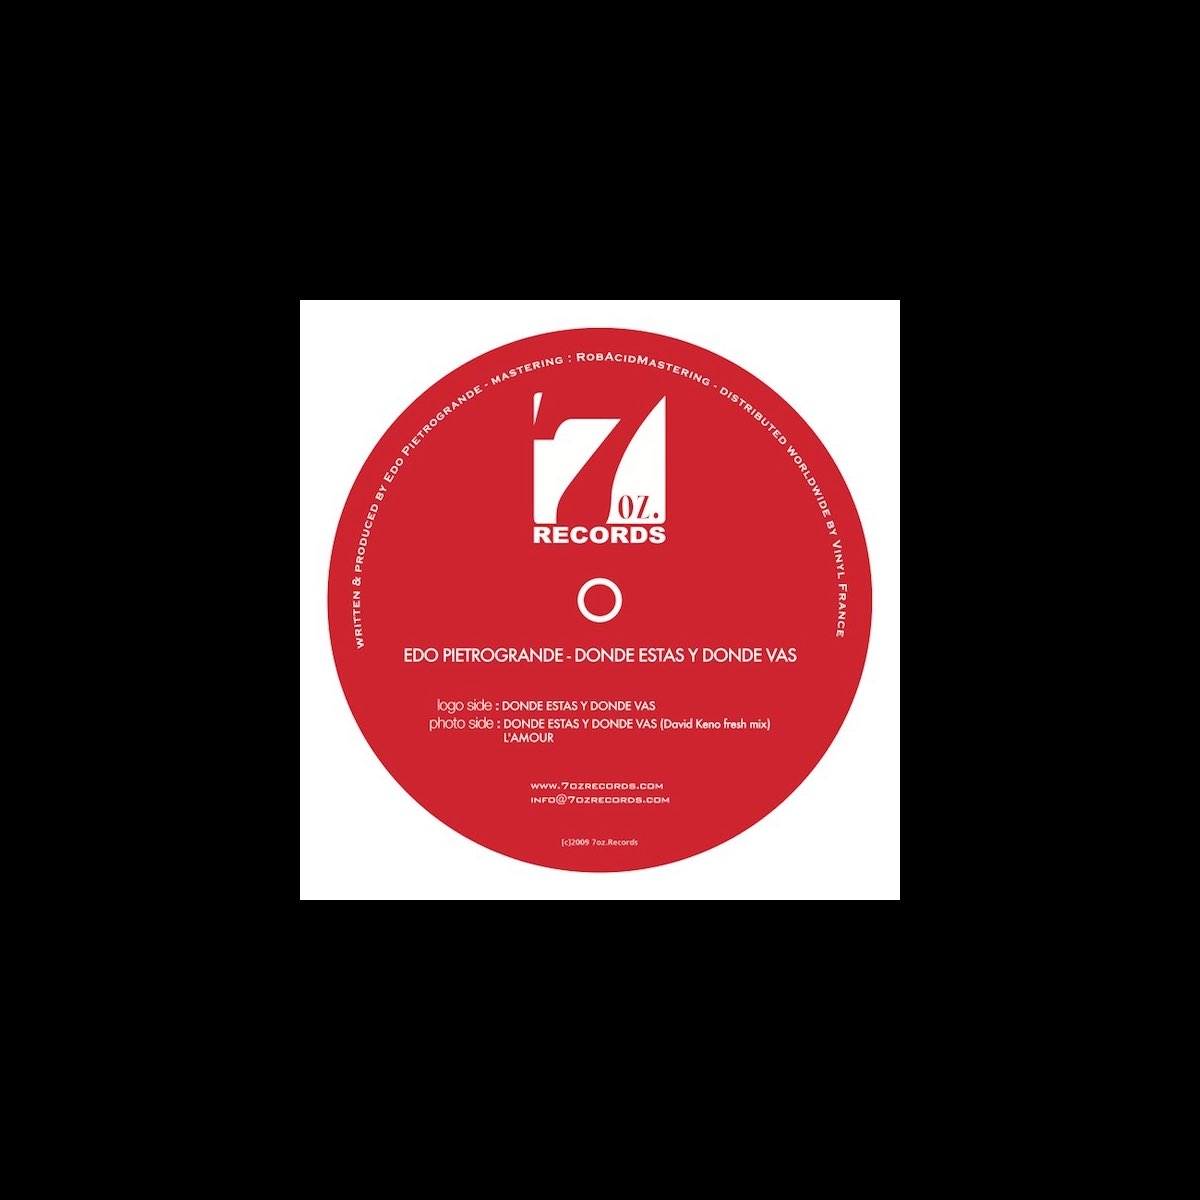 prefacio Imbécil Implacable Donde Estas Y Donde Vas - EP - Single de Edo Pietrogrande en Apple Music